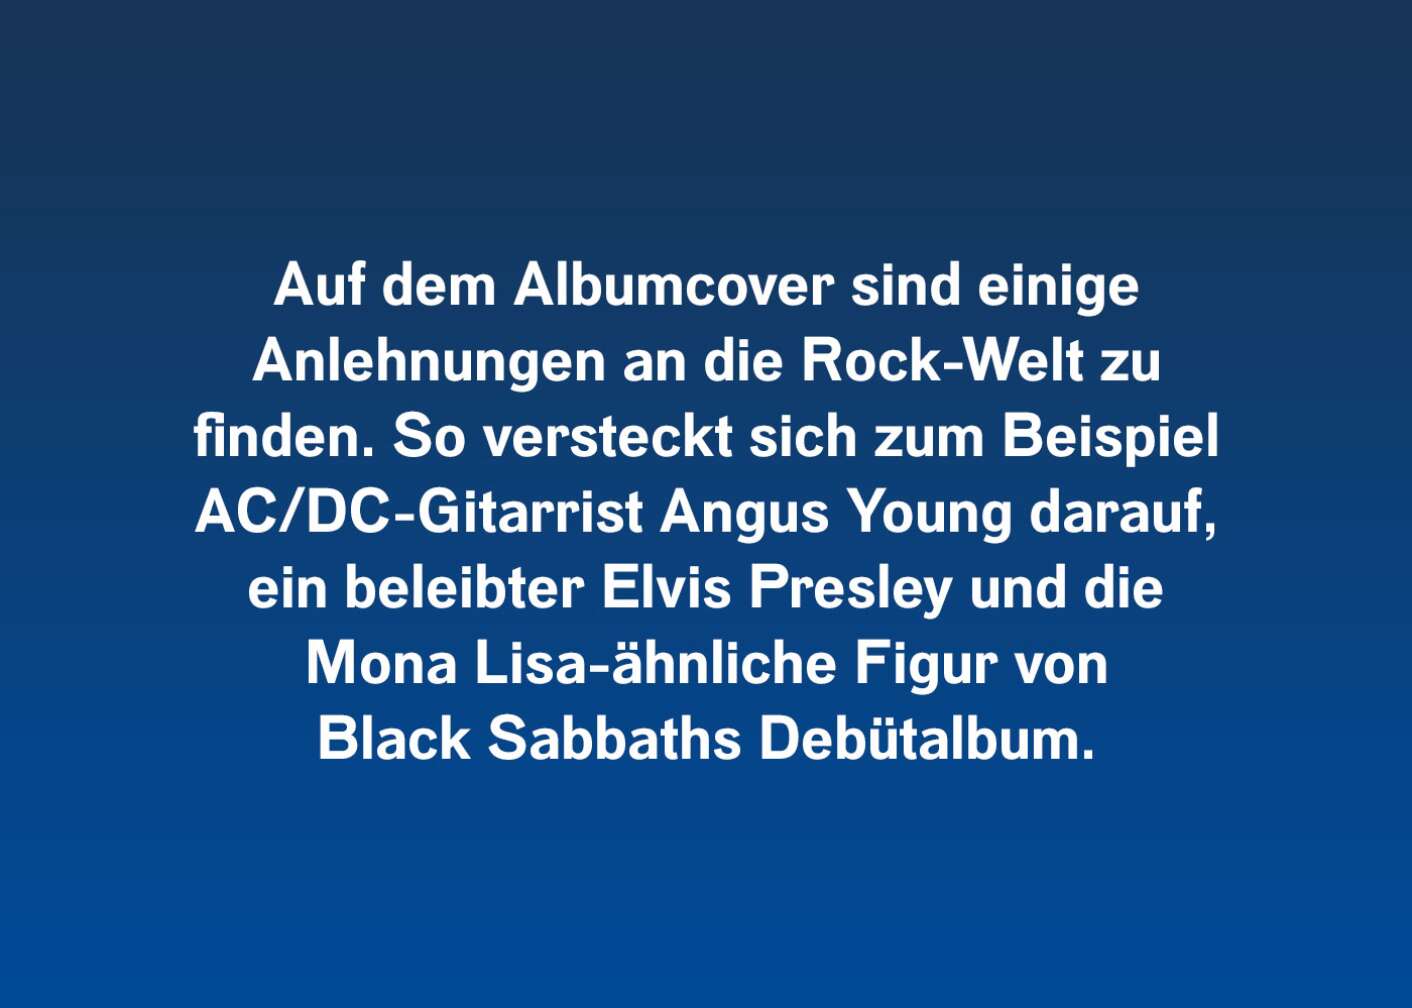 Auf dem Albumcover sind einige Anlehnungen an die Rockwelt zu finden. So versteckt sich zum Beispiel AC/DC-Gitarrist Angus Young darauf, ein beleibter Elvis Presley und die Mona Lisa-ähnliche Figur von Black Sabbaths Debütalbum.